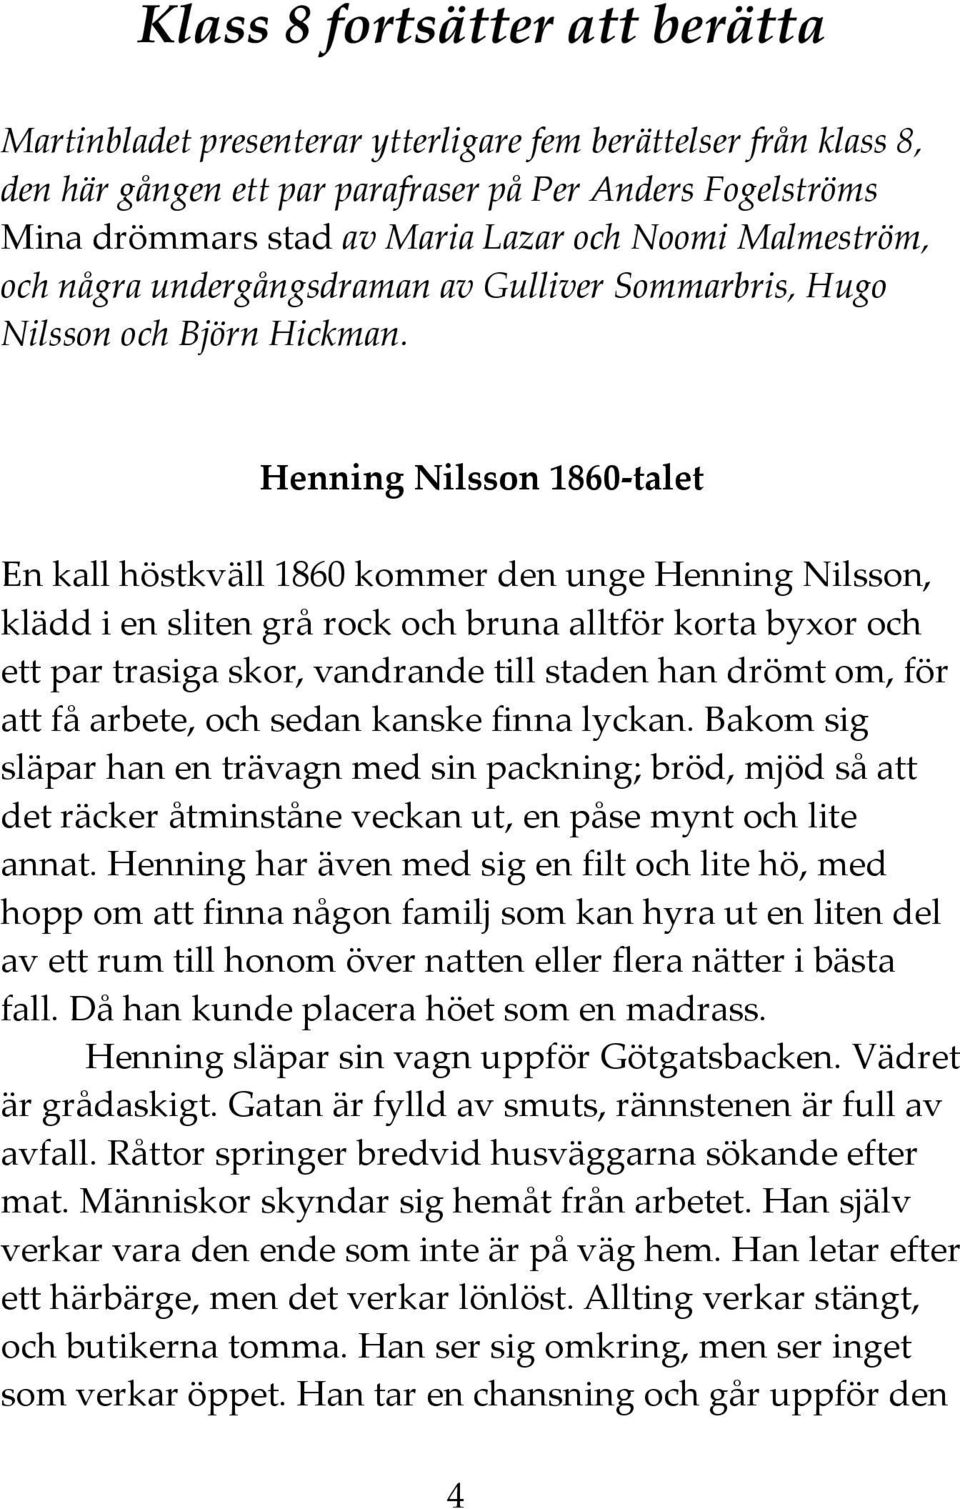 Henning Nilsson 1860-talet En kall höstkväll 1860 kommer den unge Henning Nilsson, klädd i en sliten grå rock och bruna alltför korta byxor och ett par trasiga skor, vandrande till staden han drömt